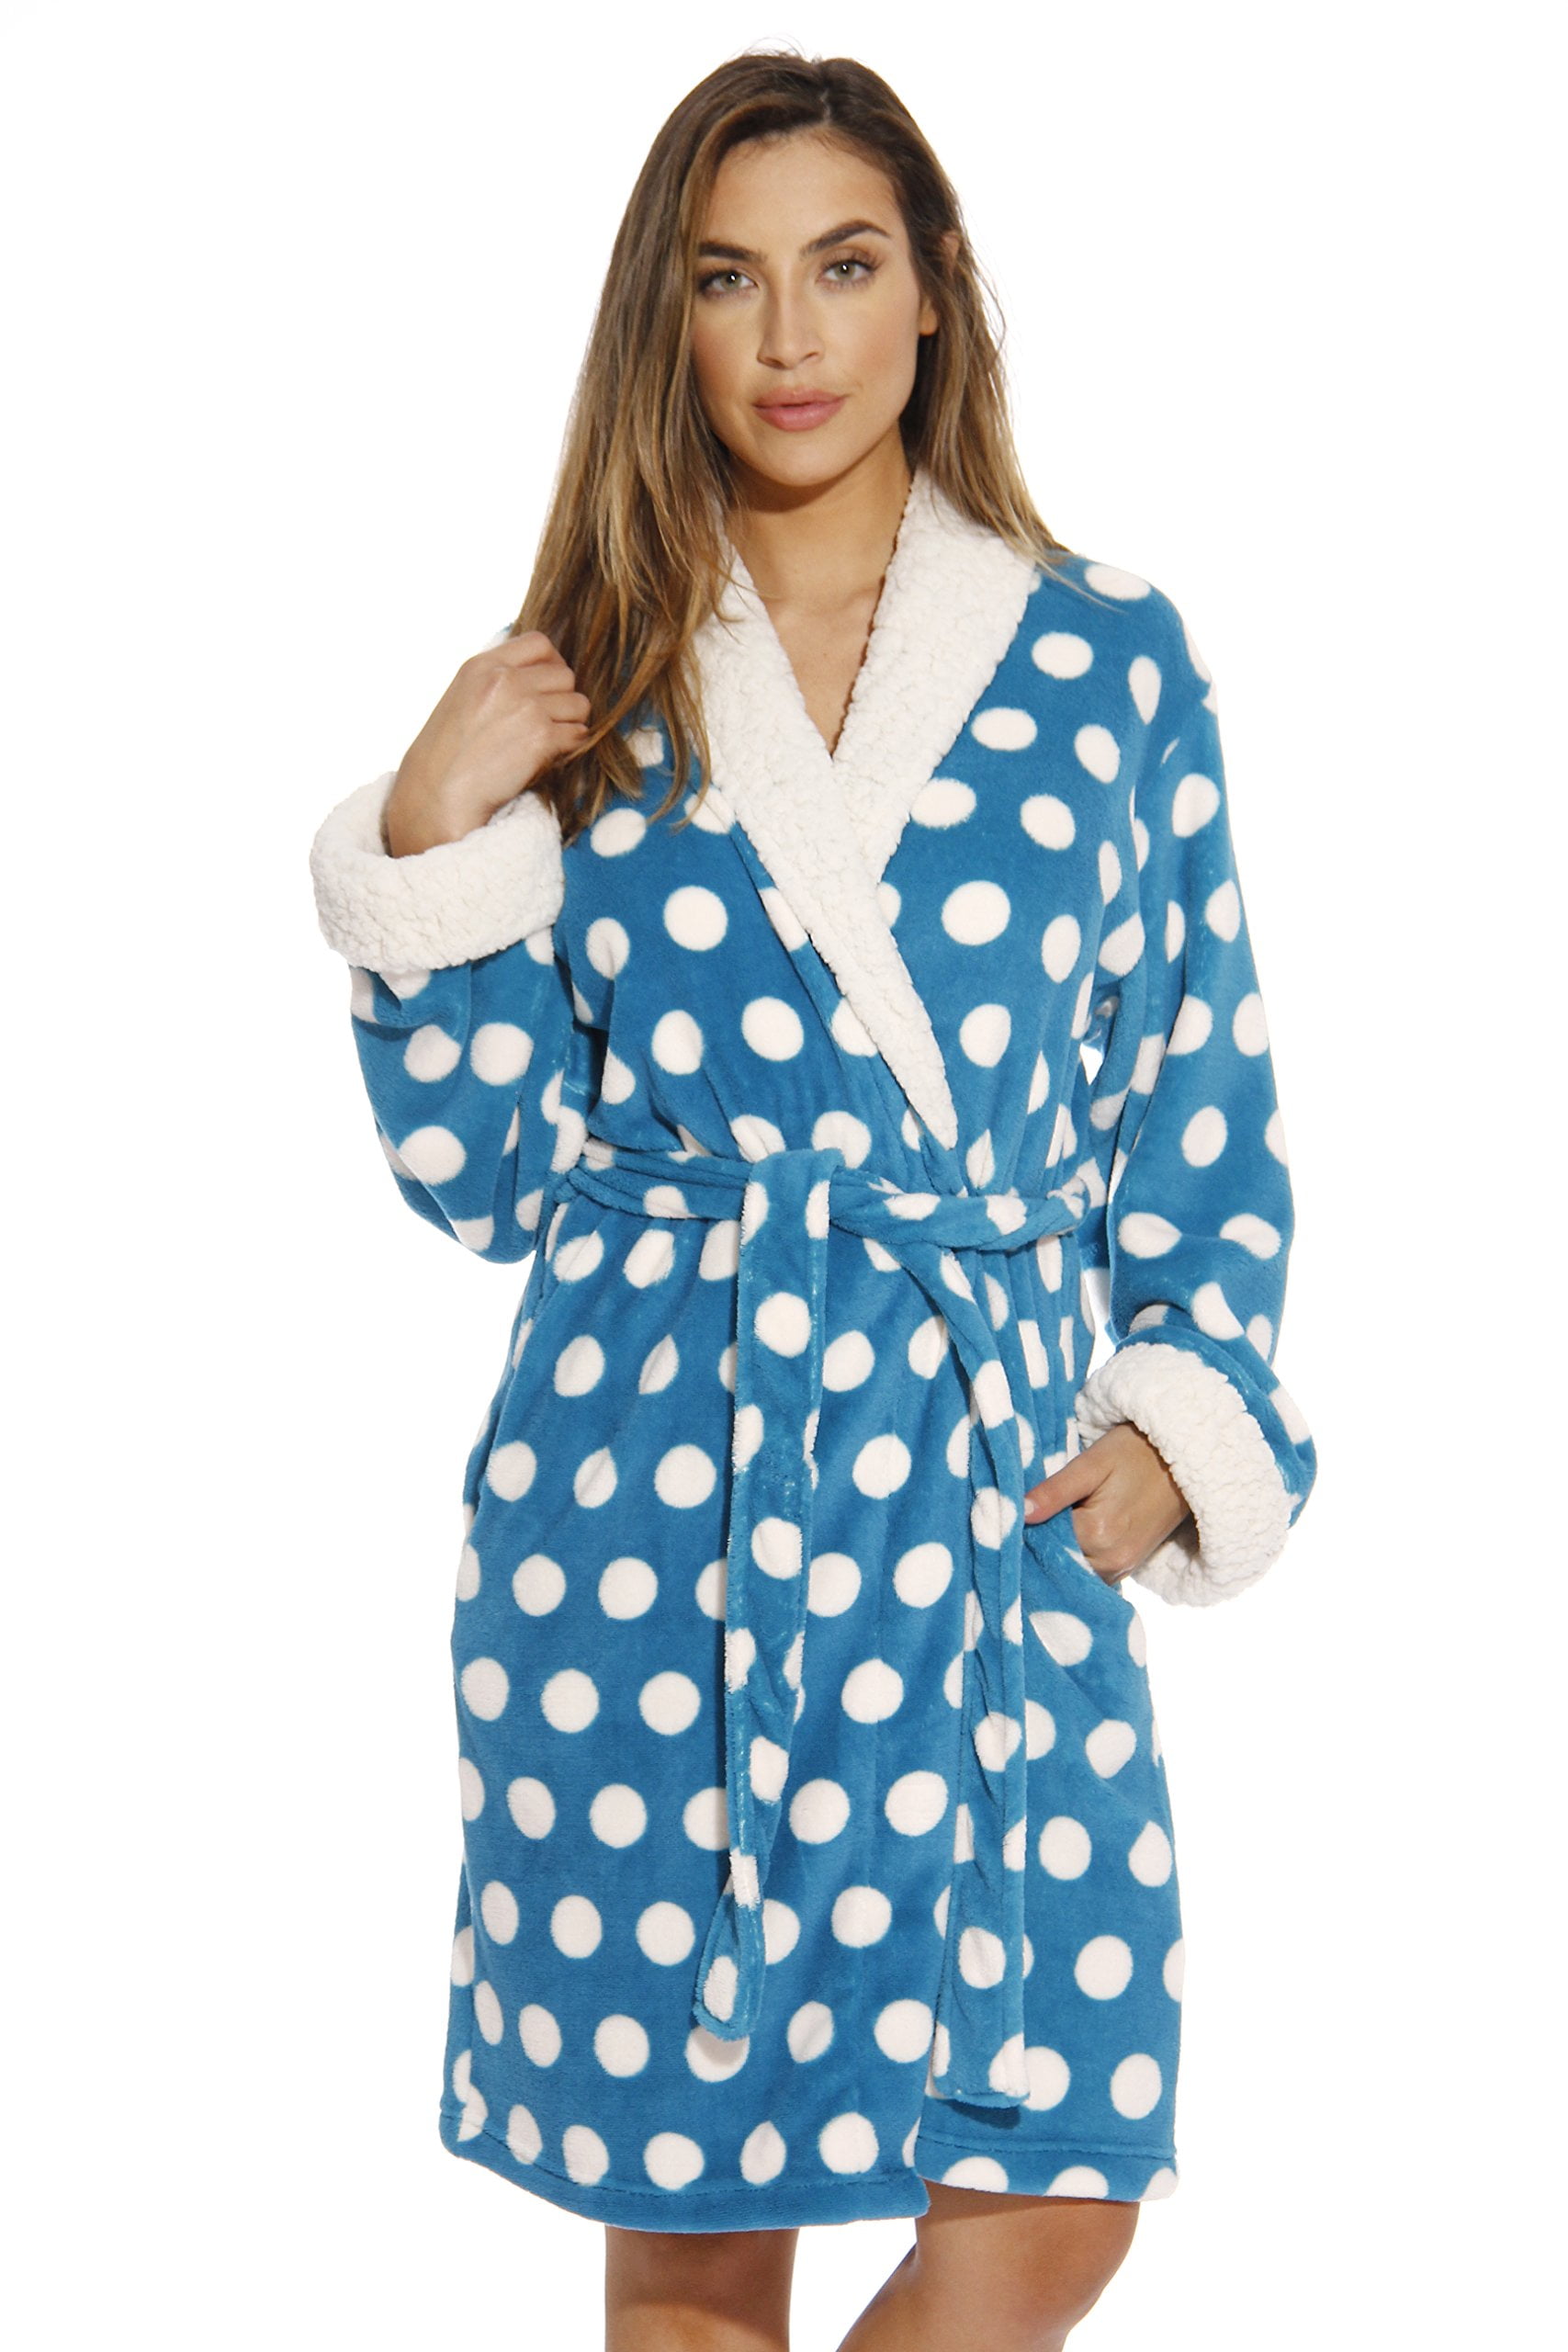 Polka Dot Kimono Robe Bath Robes For Women Turquoise X Small Walmart